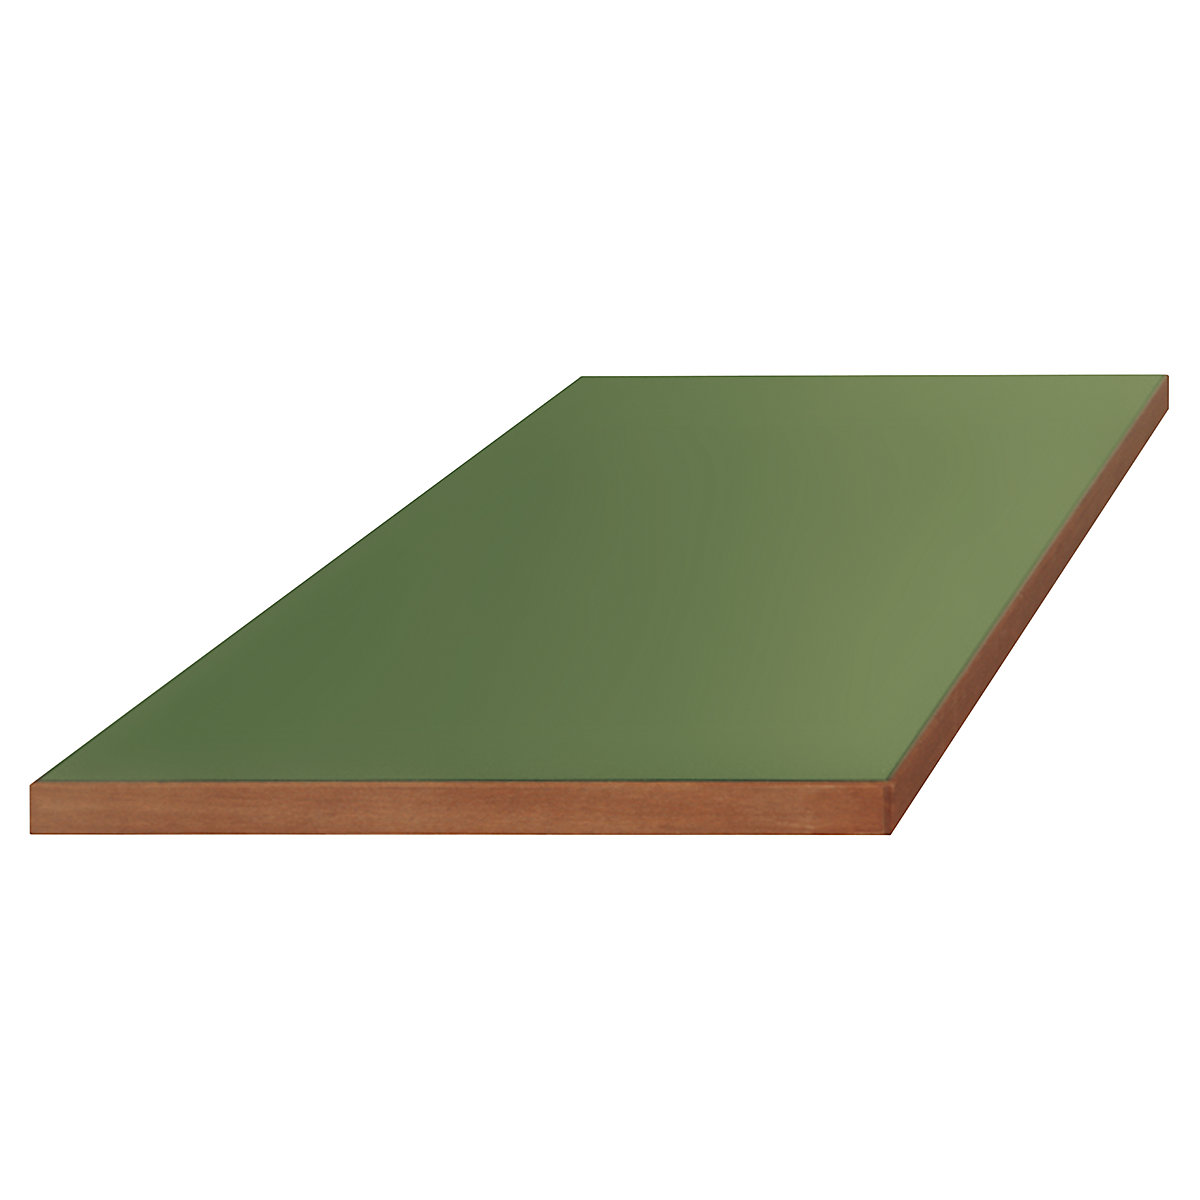 Plateau pour établis modulaires – LISTA, revêtement Urphen sur base en bois, l x p 2000 x 750 mm, épaisseur 50 mm-9